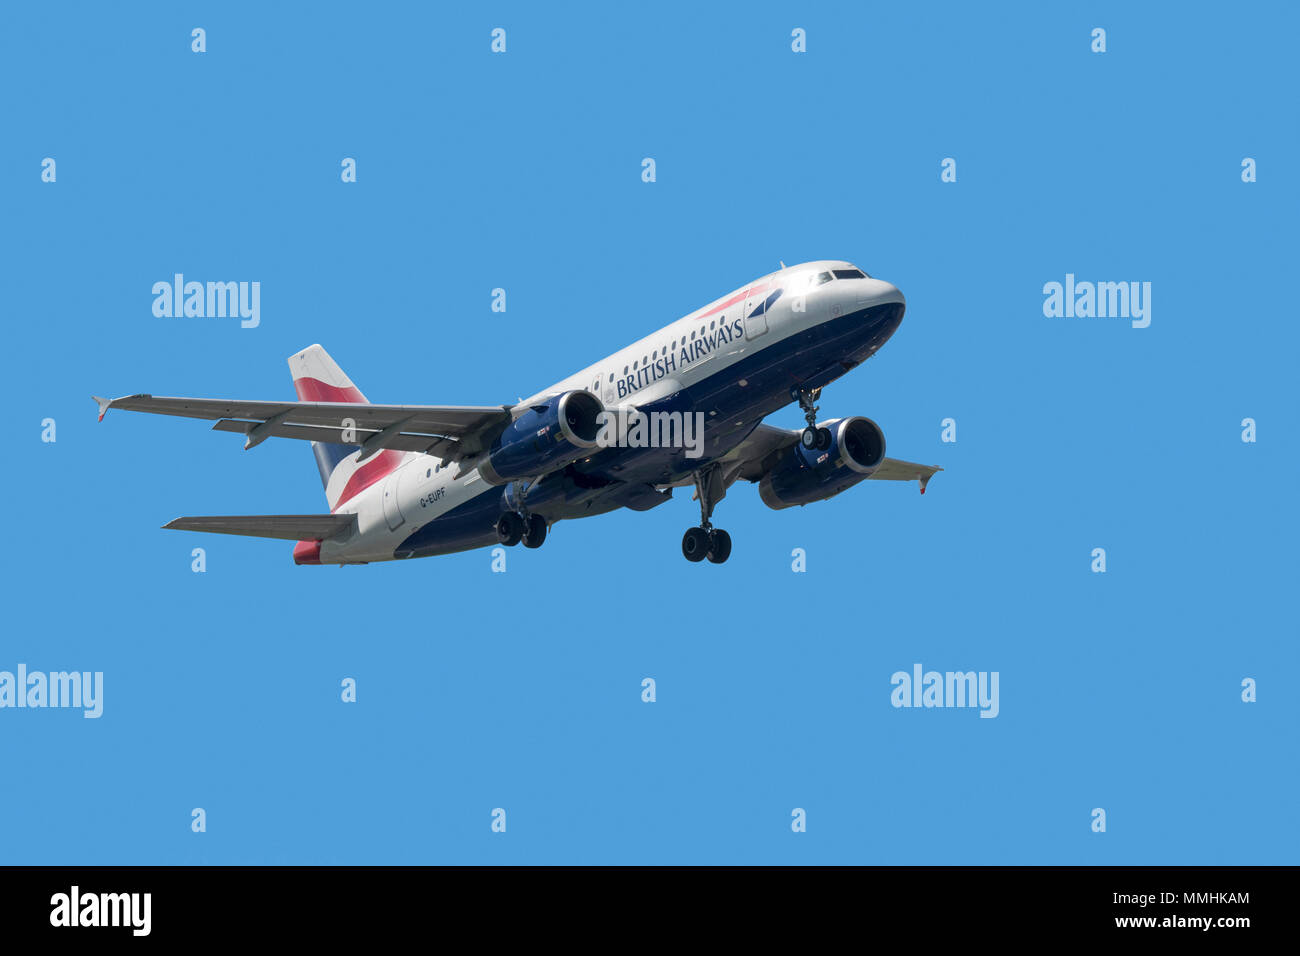 Airbus A 319-131, schmal - Körper, kommerziellen Passagier zweistrahlige Jet Airliner von British Airways im Flug gegen den blauen Himmel Stockfoto